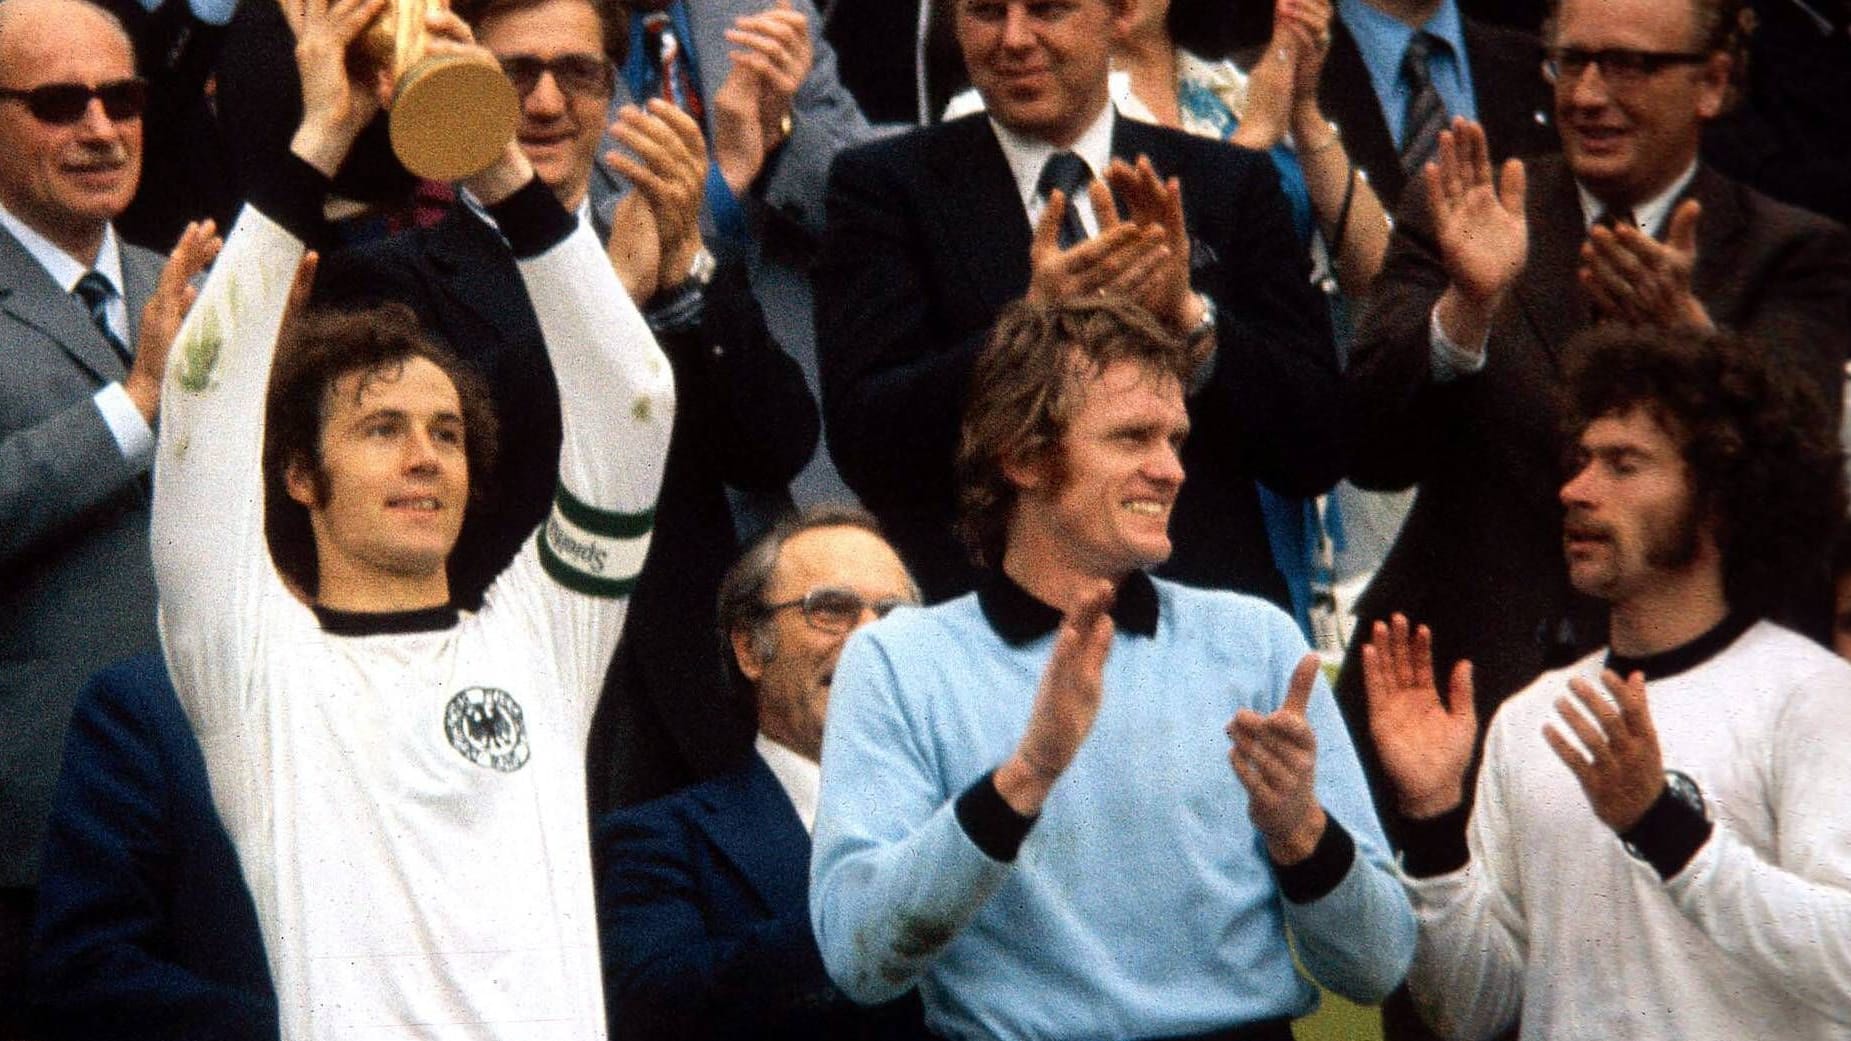 WM-Helden von 1974: Ehemalige Spieler über den DFB verärgert